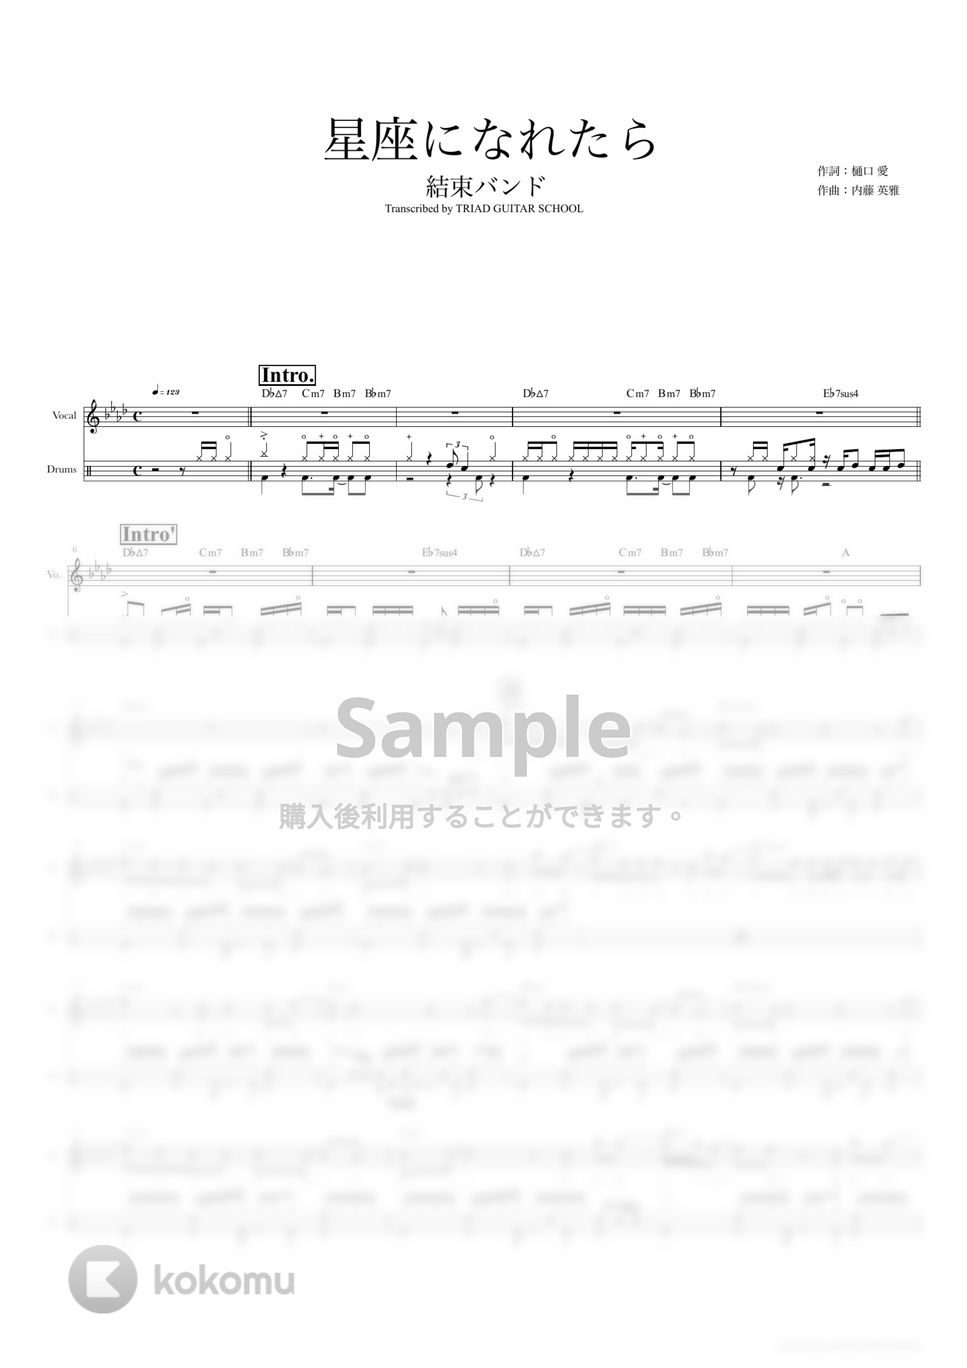 結束バンド - 星座になれたら (ドラムスコア・歌詞・コード付き) by TRIAD GUITAR SCHOOL